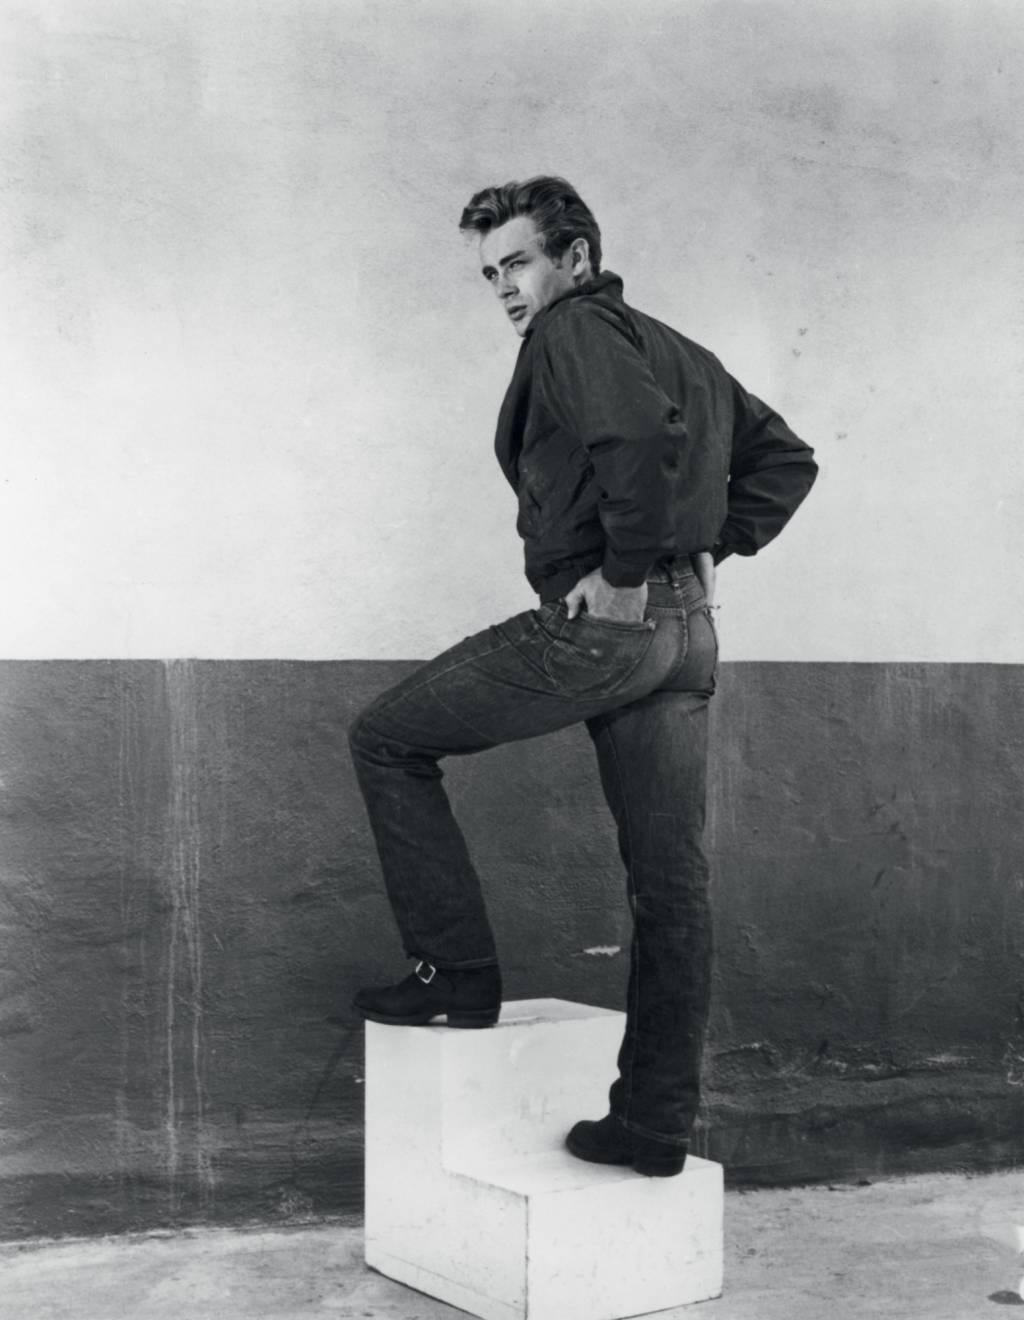 REBELDIA - Anos 1950 - James Dean virou ícone de rebeldia ao adotar a calça de denim no cinema. Era a tradução do comportamento transgressor dos jovens da época.